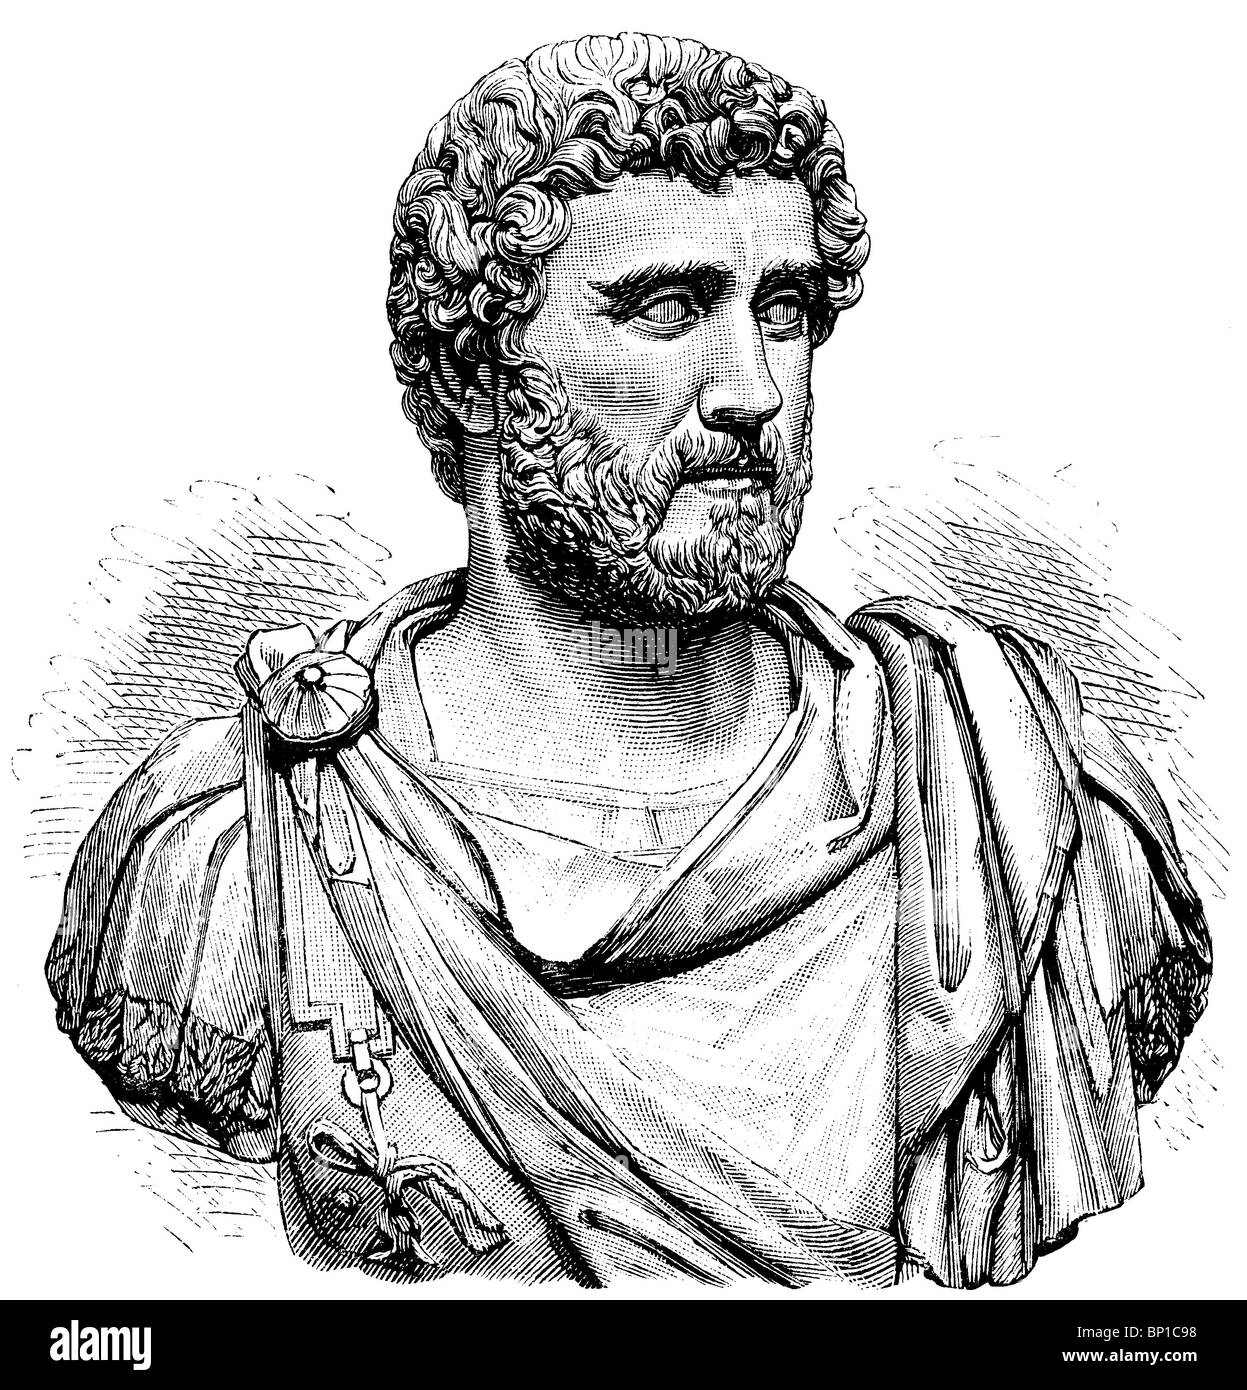 Marcus Aurelius, Antonius Philosophus (121 - 180), Roman emperor  Stock Photo